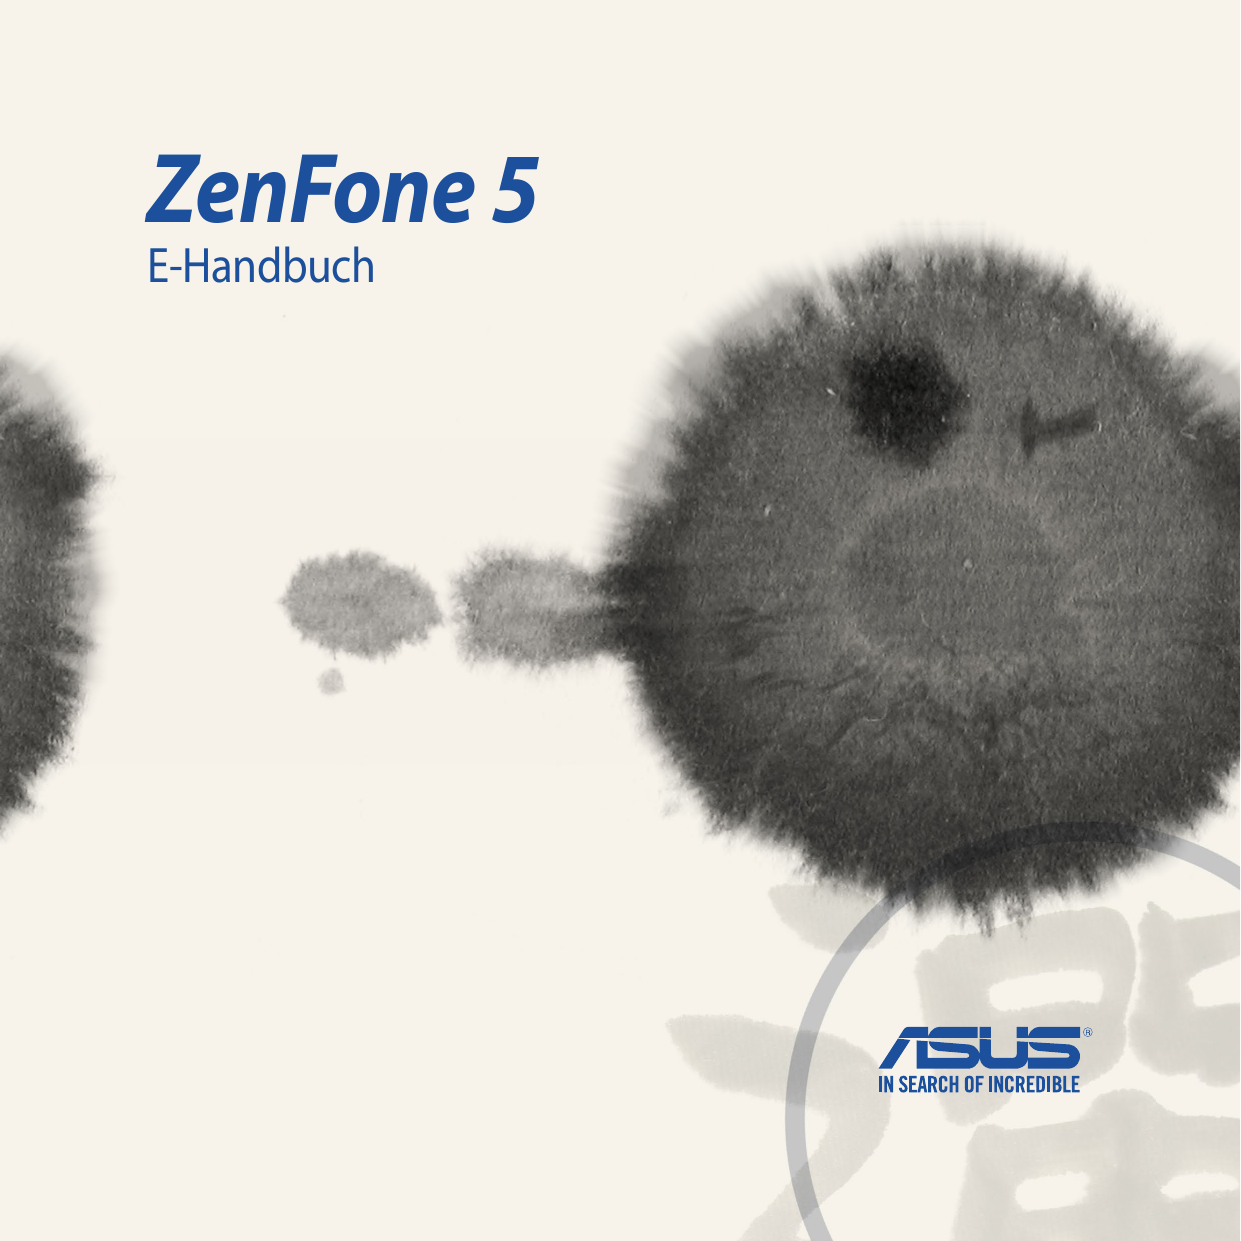 ZenFone 5E-Handbuch